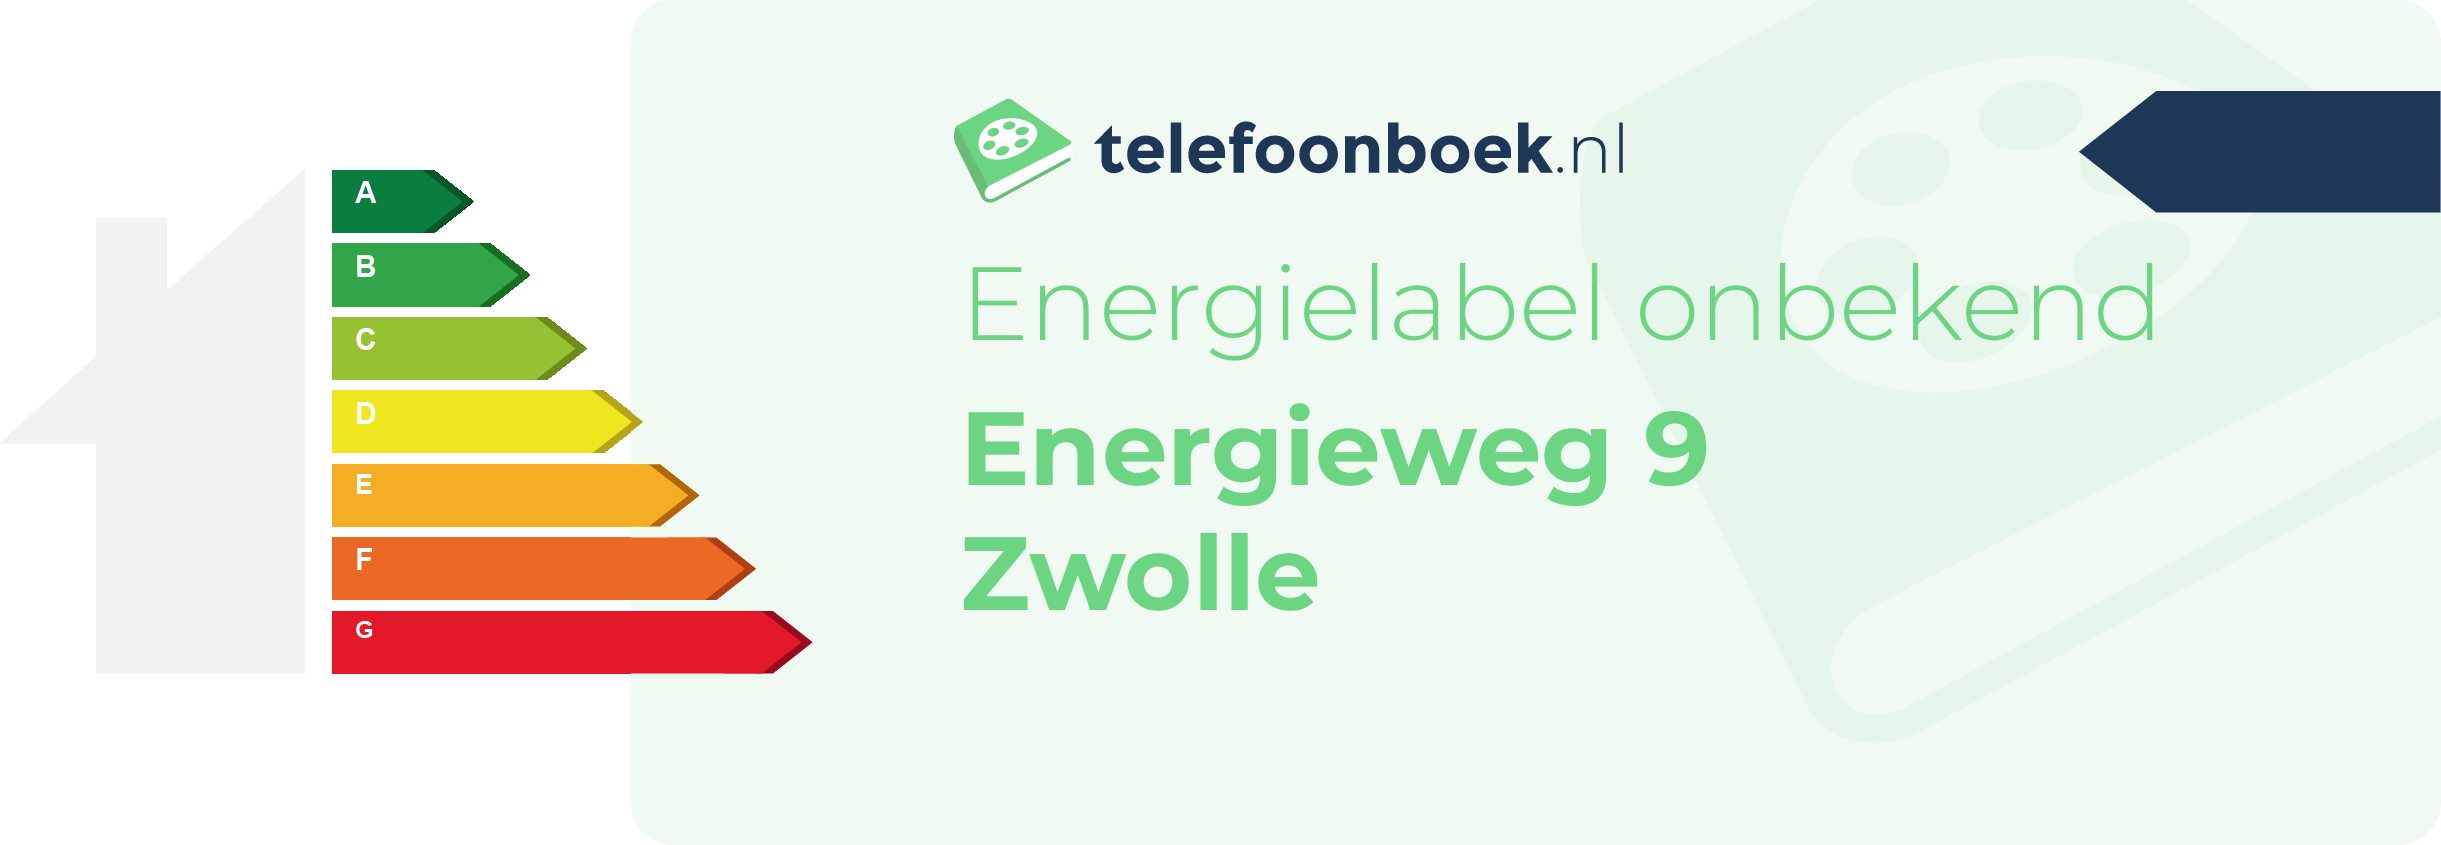 Energielabel Energieweg 9 Zwolle